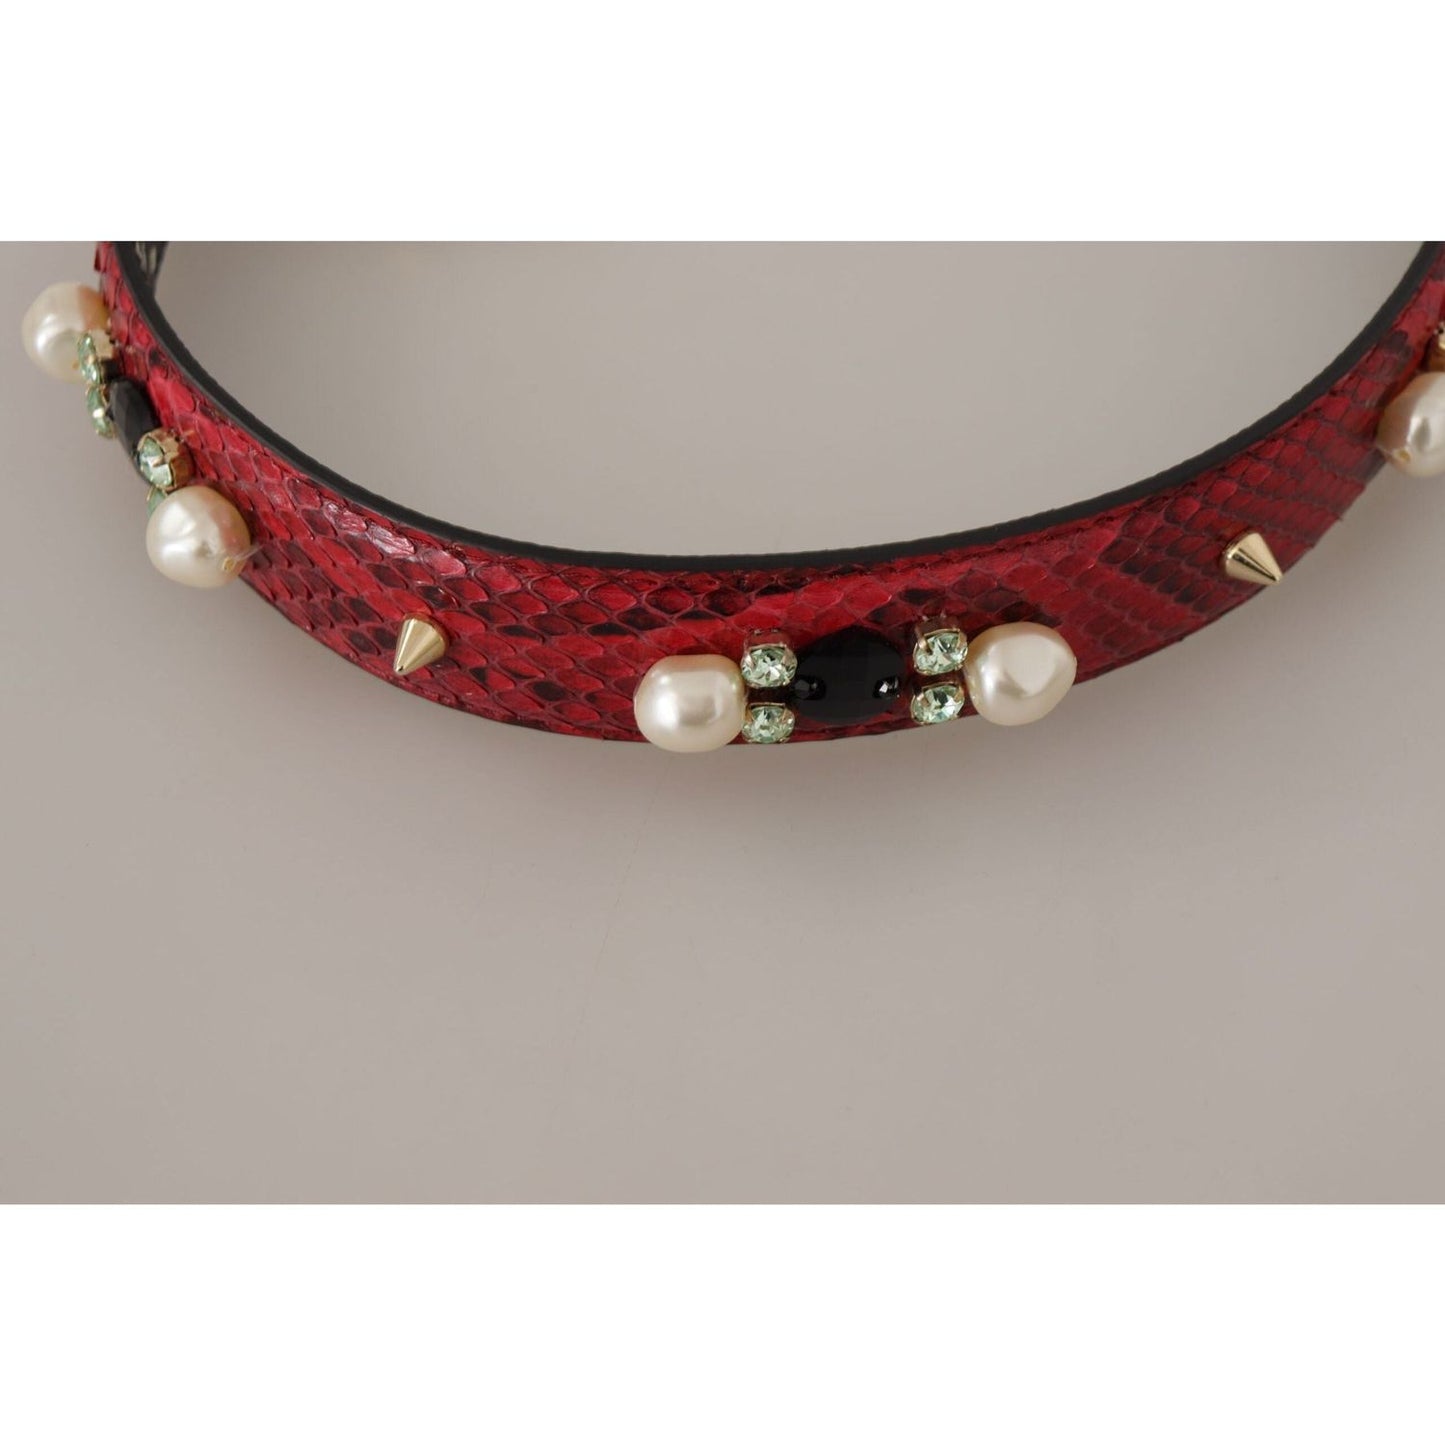 Dolce & Gabbana Elegant Red Python Leather Shoulder Strap red-exotic-leather-crystals-bag-shoulder-strap IMG_9661-2-scaled-03c85ed4-cdc.jpg